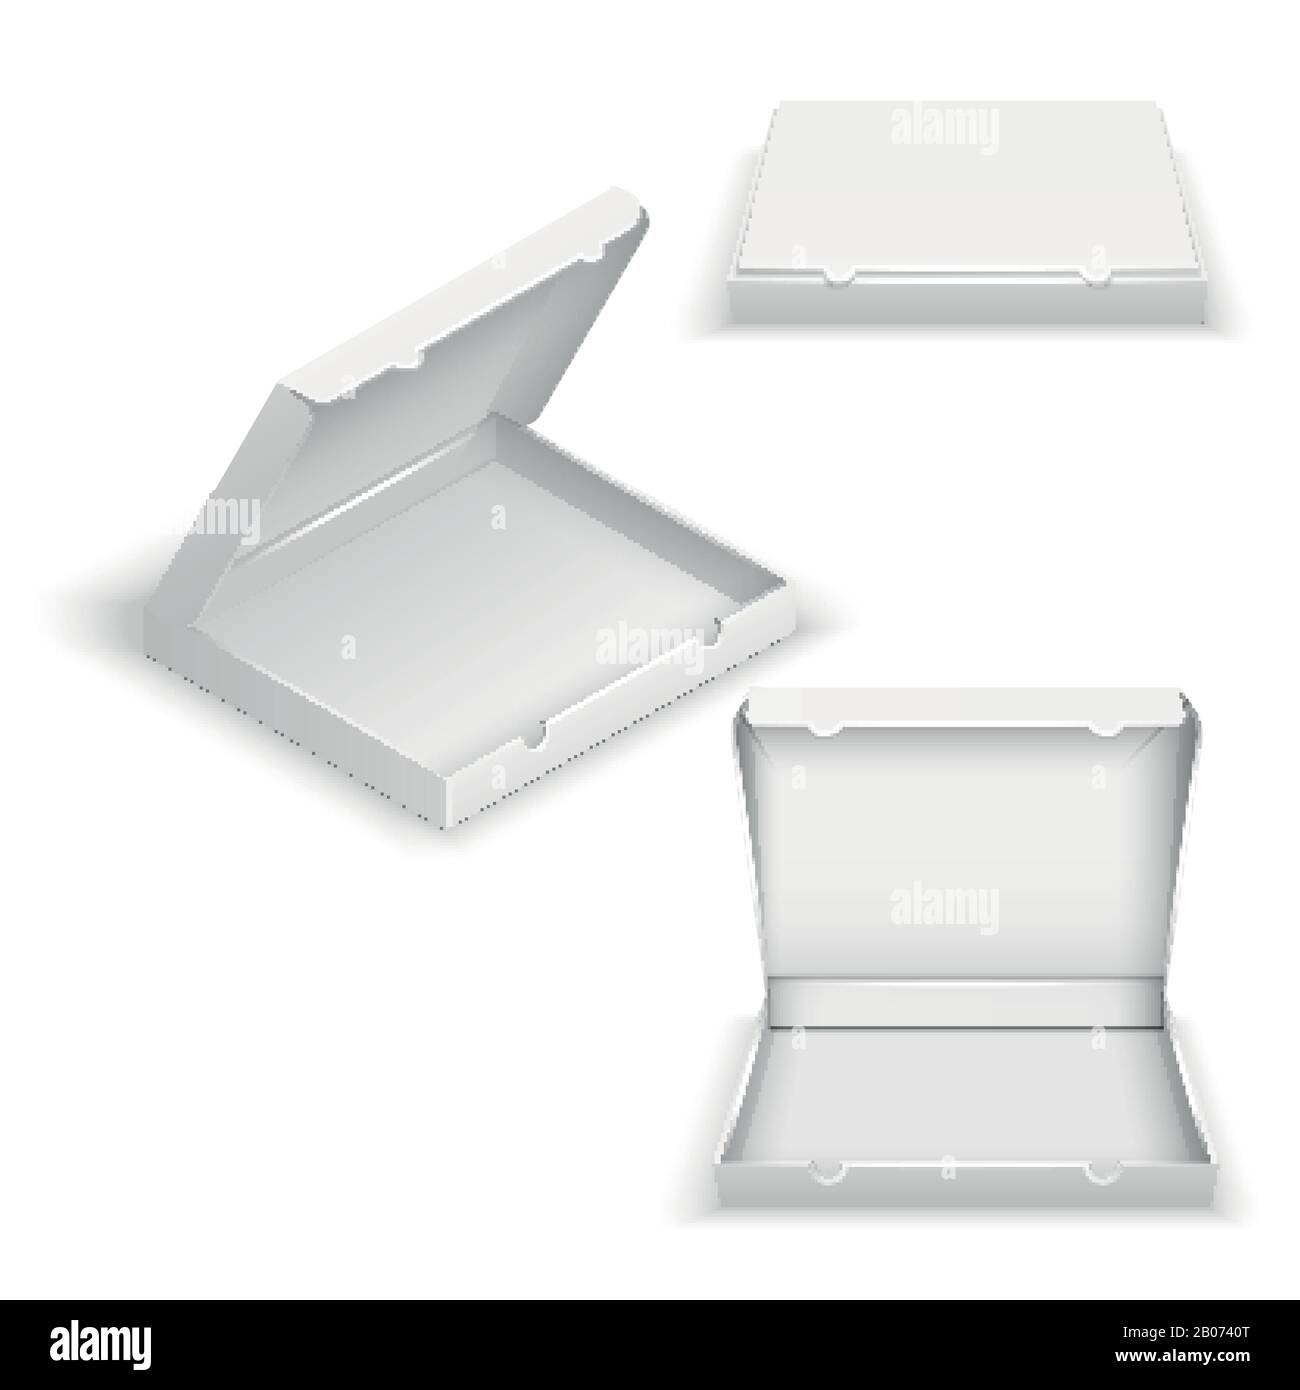 Boîtes à pizza vides réalistes isolées sur illustration vectorielle blanche. Conteneur vide de poche pour ranger les aliments Illustration de Vecteur